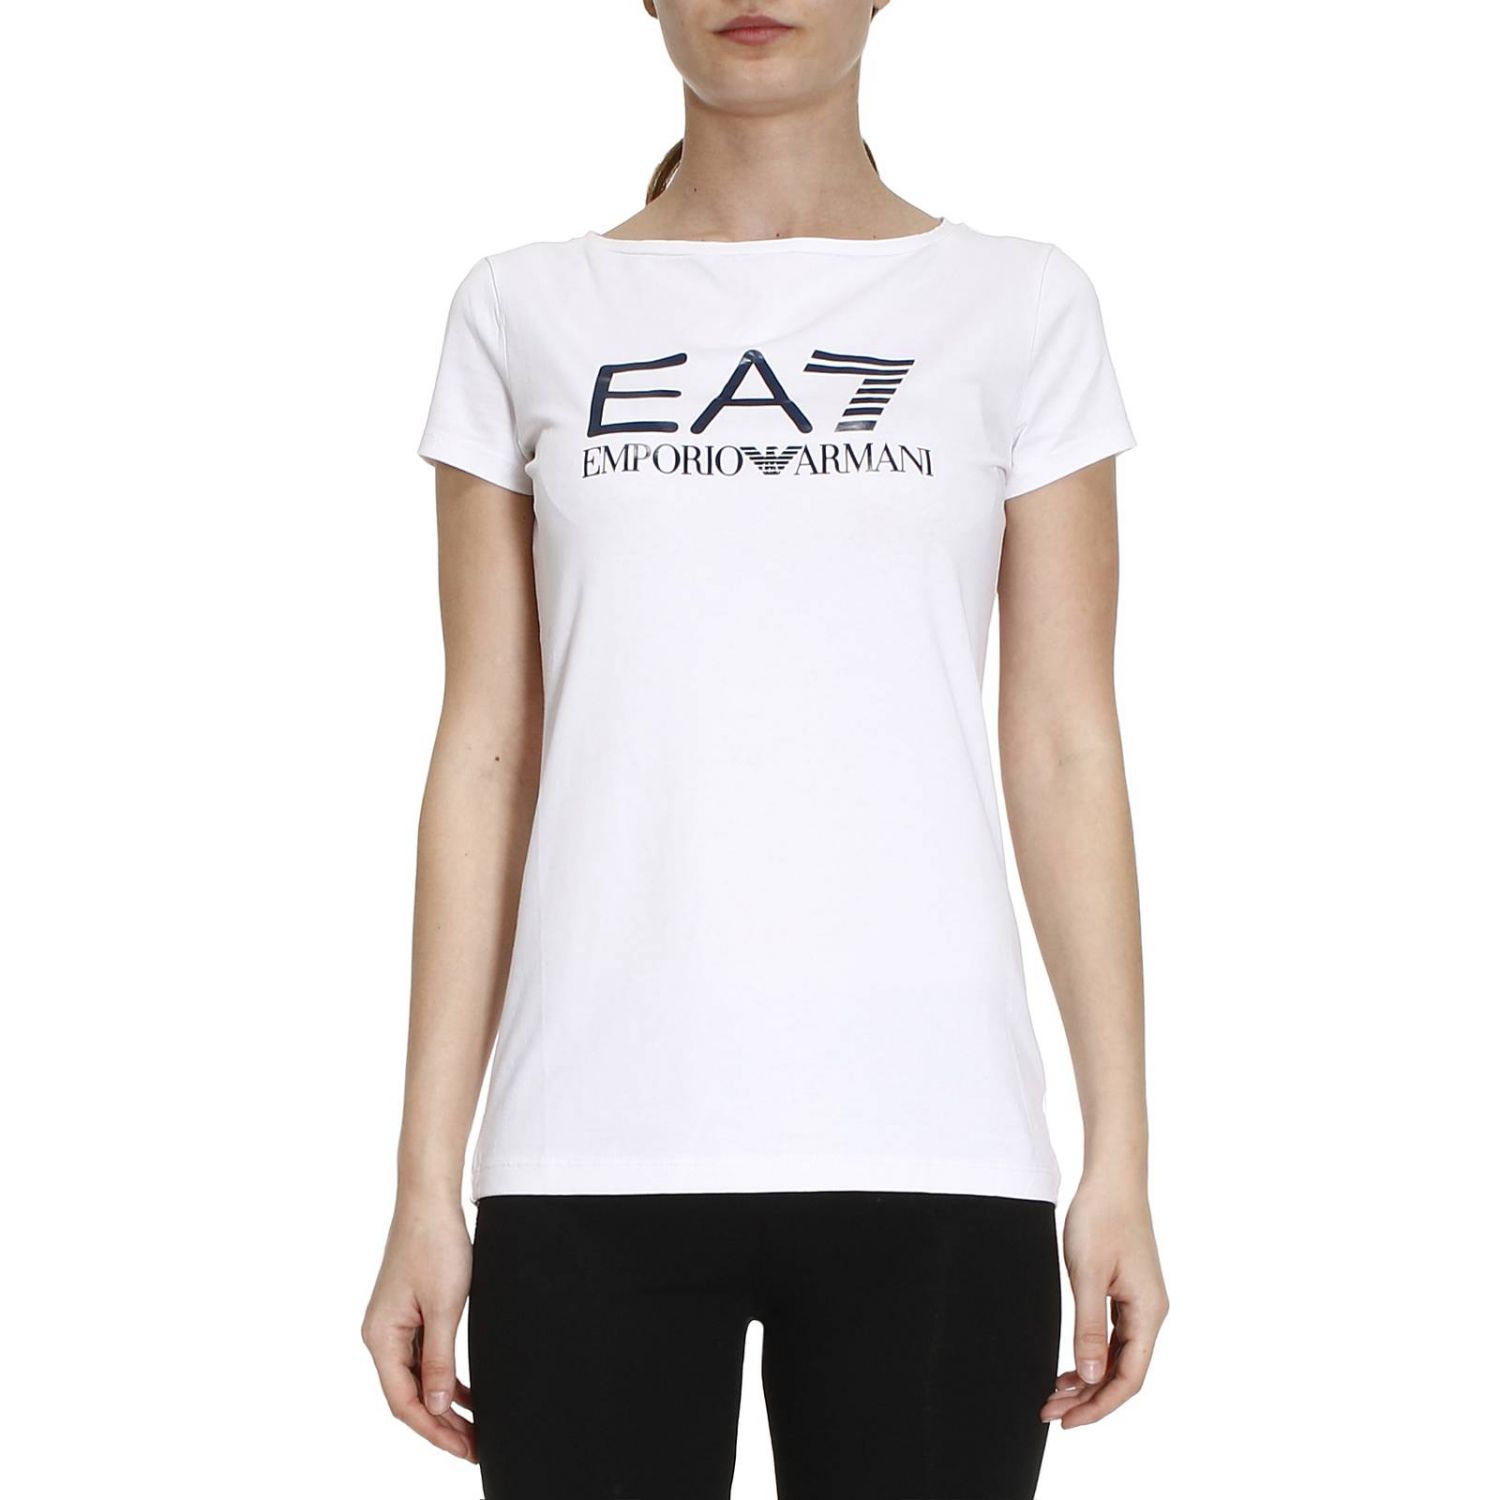 ea7 t shirt womens